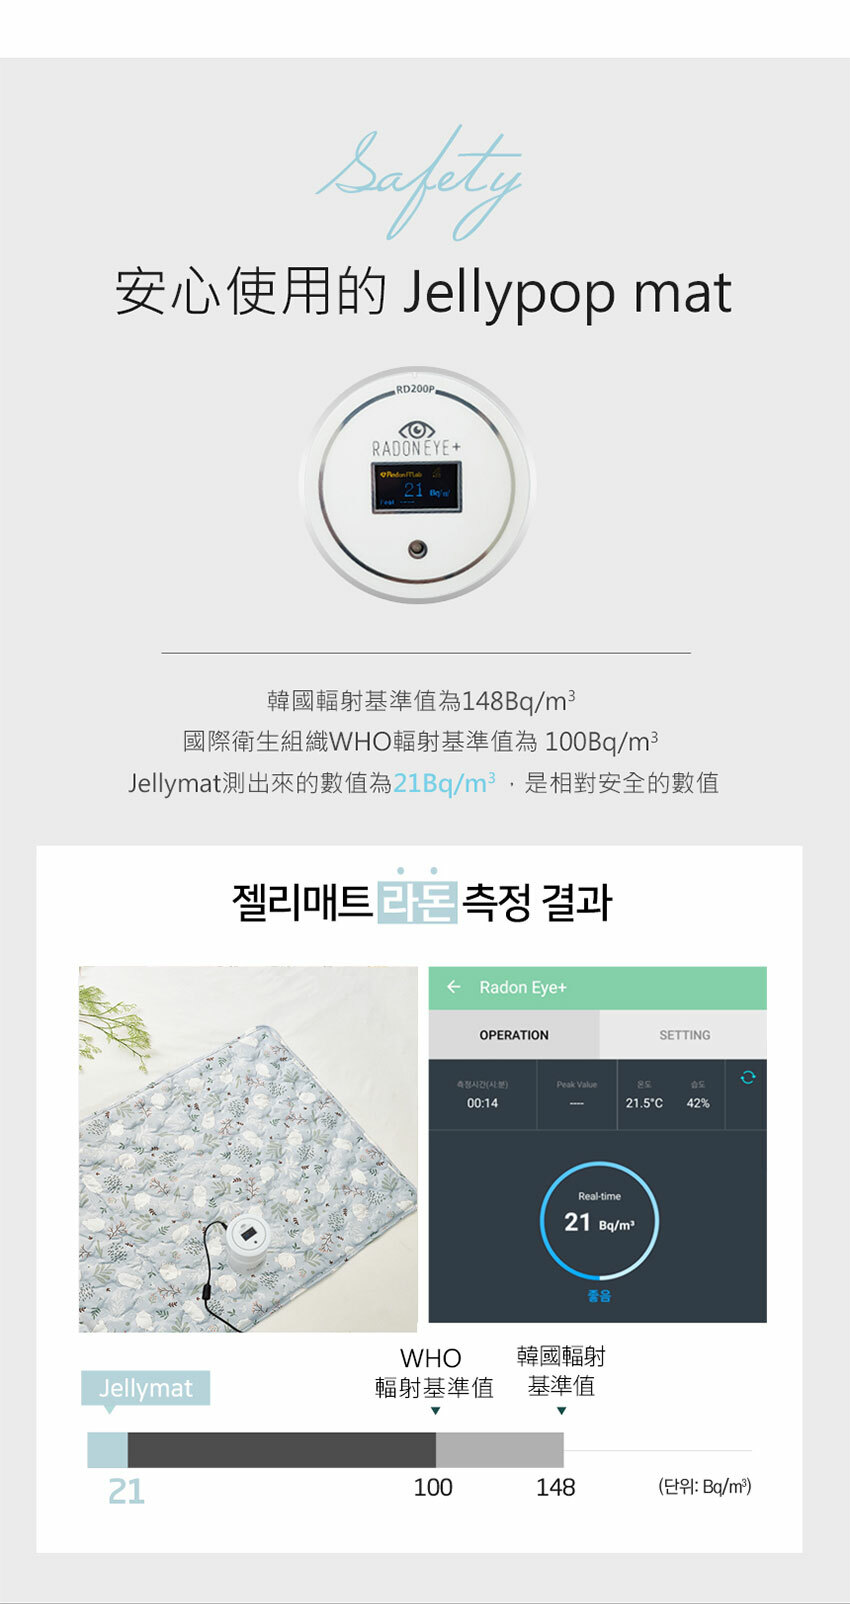 【韓國 Jellypop】Jellymat 全新微顆粒酷涼珠 100%純棉果凍床墊 - 夢幻小羊